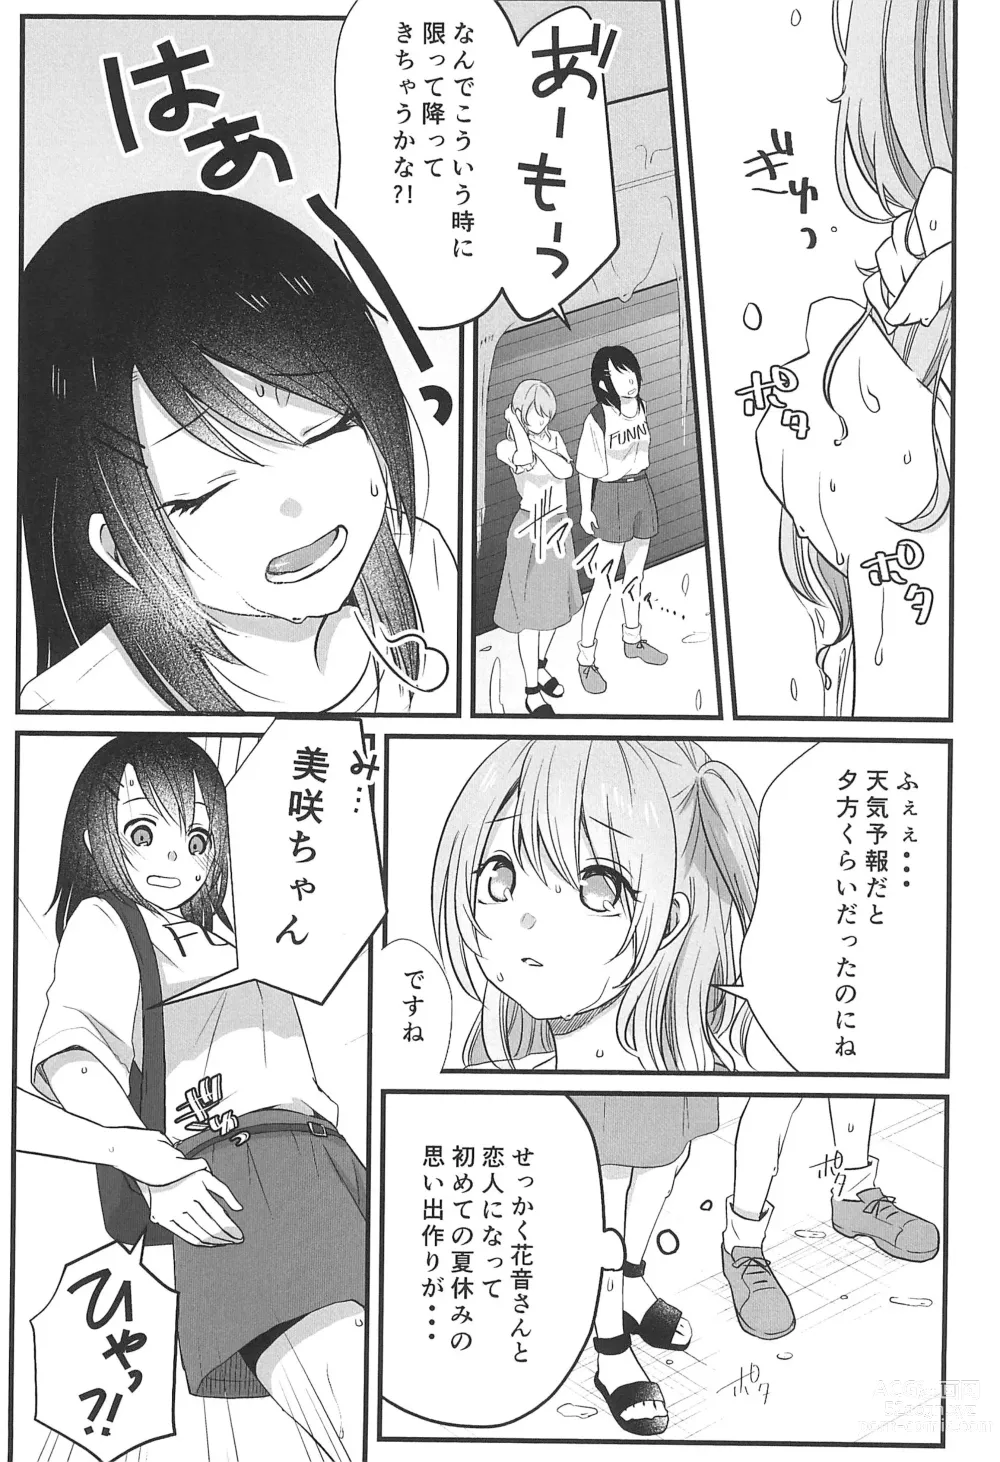 Page 5 of doujinshi Kitto Sonna Natsu no Hi no Omoide